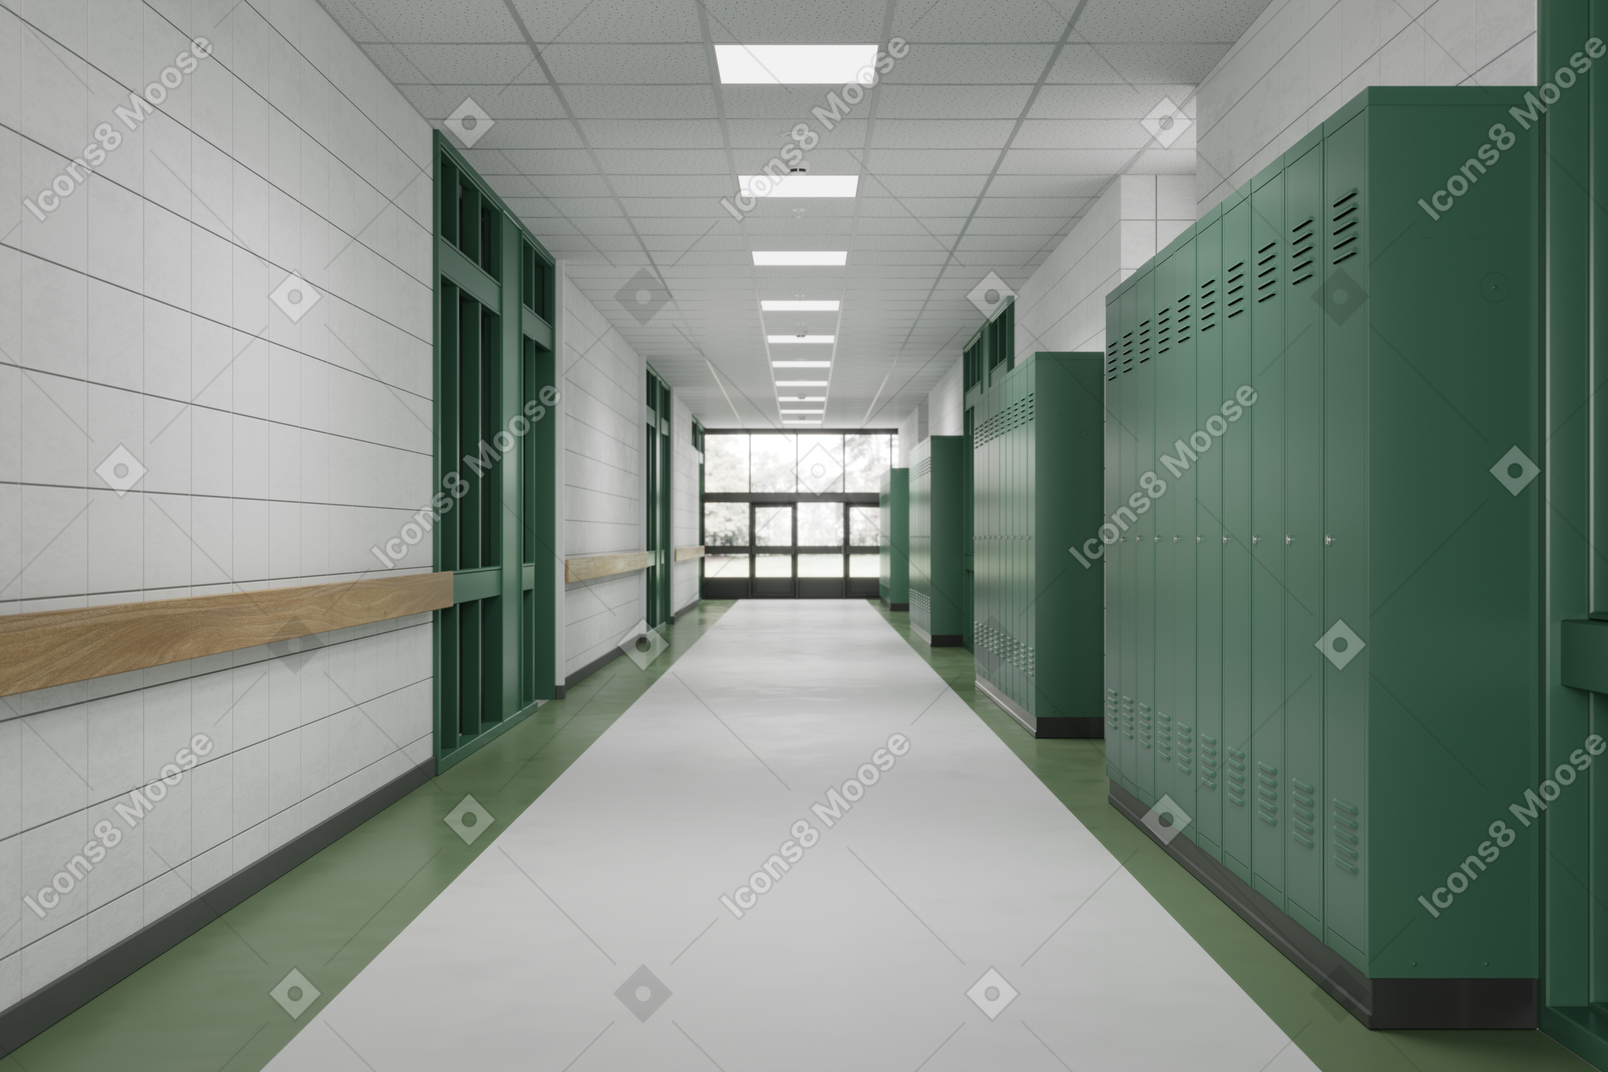 ロッカーが付いている学校の廊下